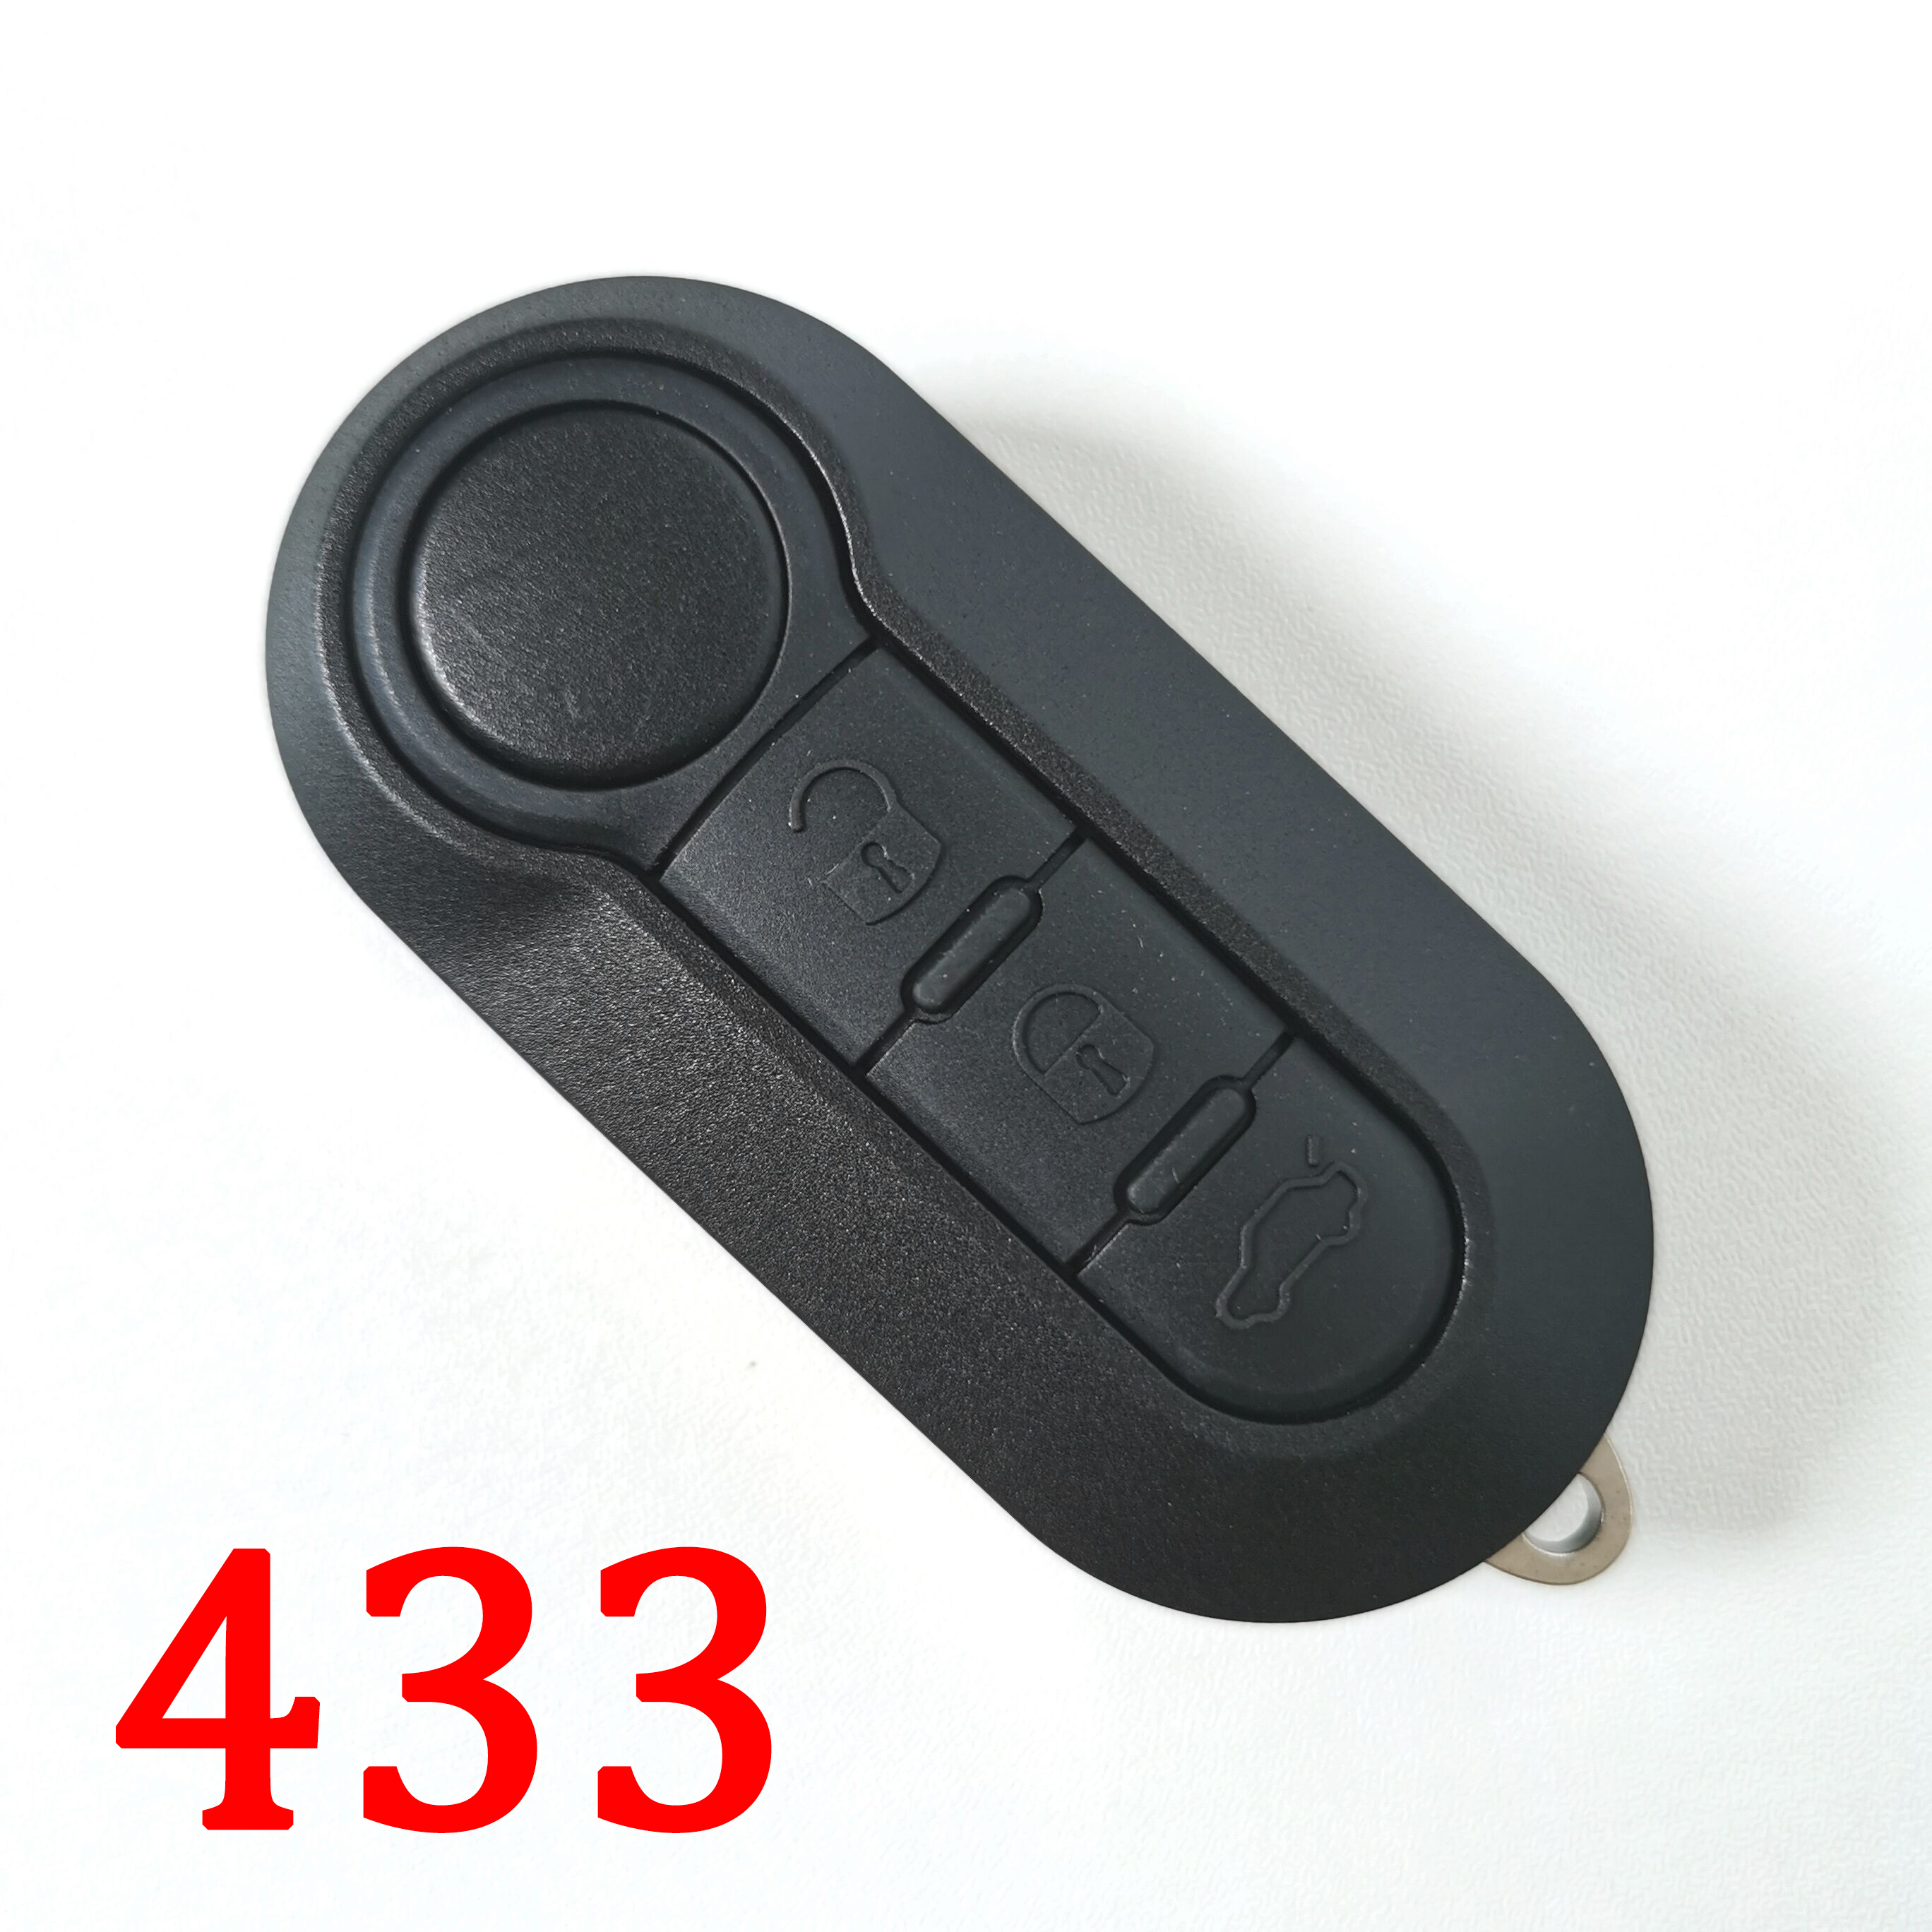 3 Buttons 433Mhz Flip Key for Fiat Delphi BCM